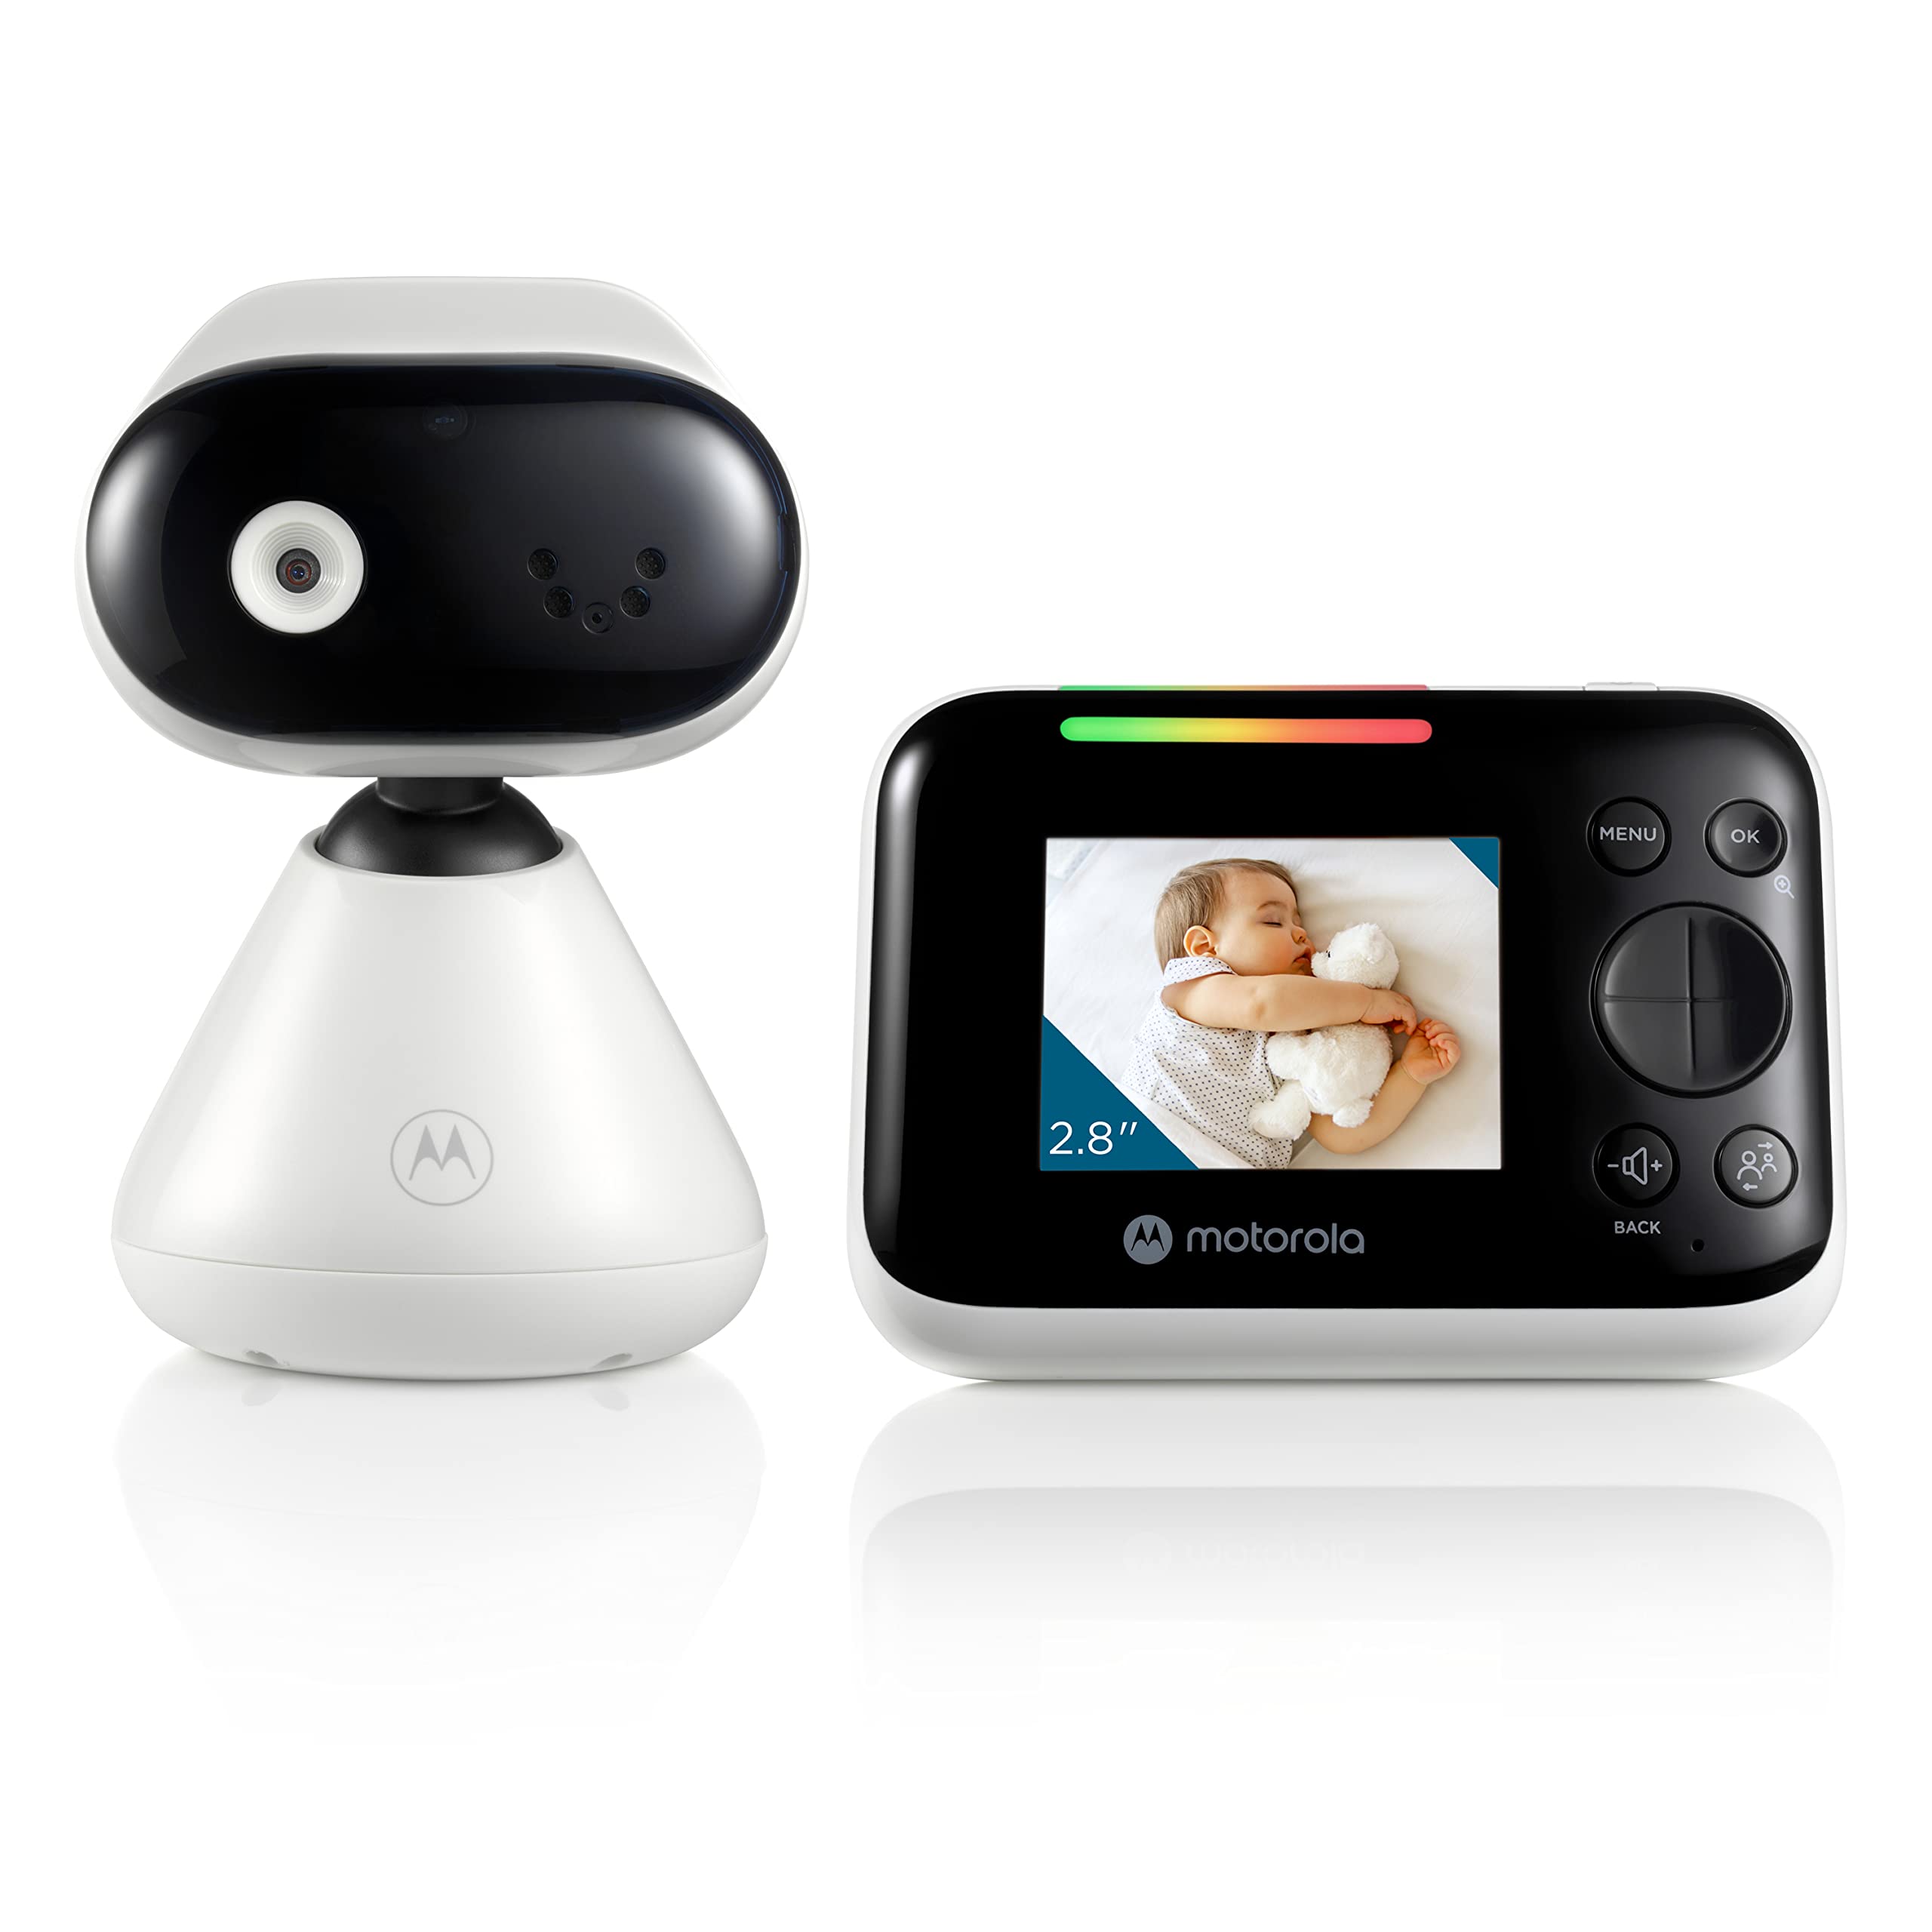 Motorola Nursery PIP1200 - Babyphone mit Kamera - 2.8" Elterneinheit - 2 Wege Kommunikation - Zimmertemperatur - Infrarot Nachtsicht - 300 m Reichweite, Weiß/Schwarz